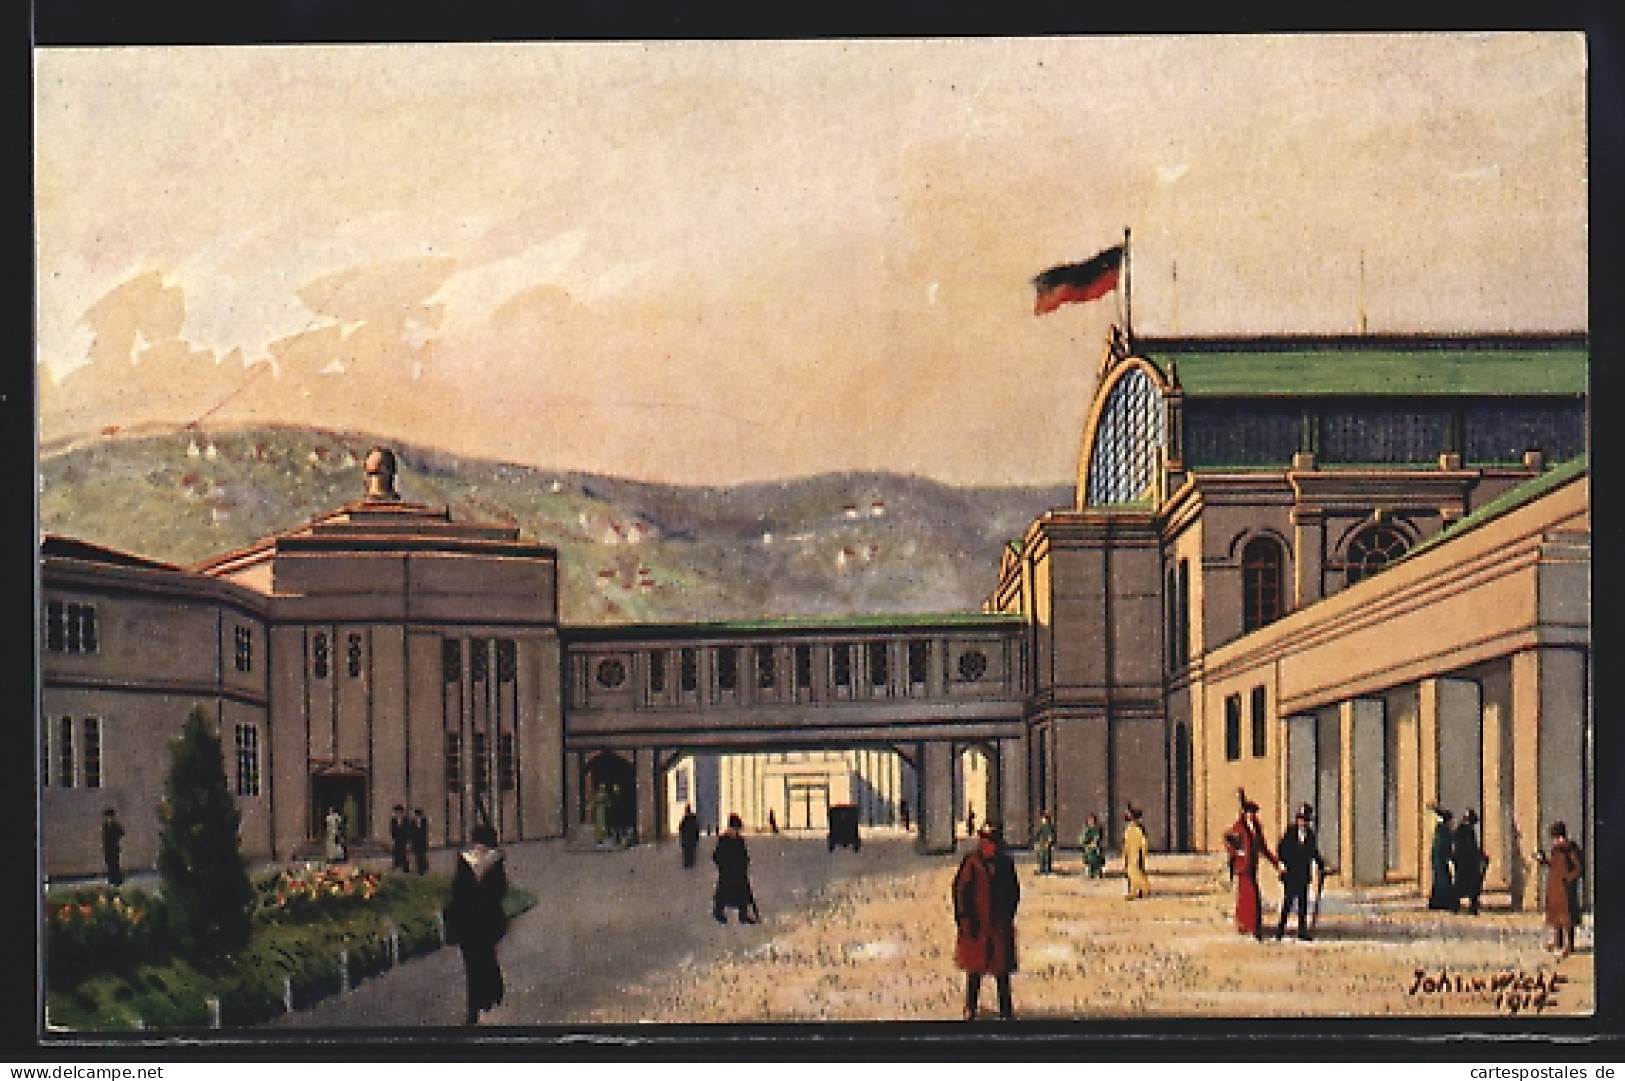 AK Stuttgart, Ausstellung Für Gesundheitspflege 1914, Die Verbindungsbrücke Zwischen Haupthalle Und Industriegebäude  - Exhibitions